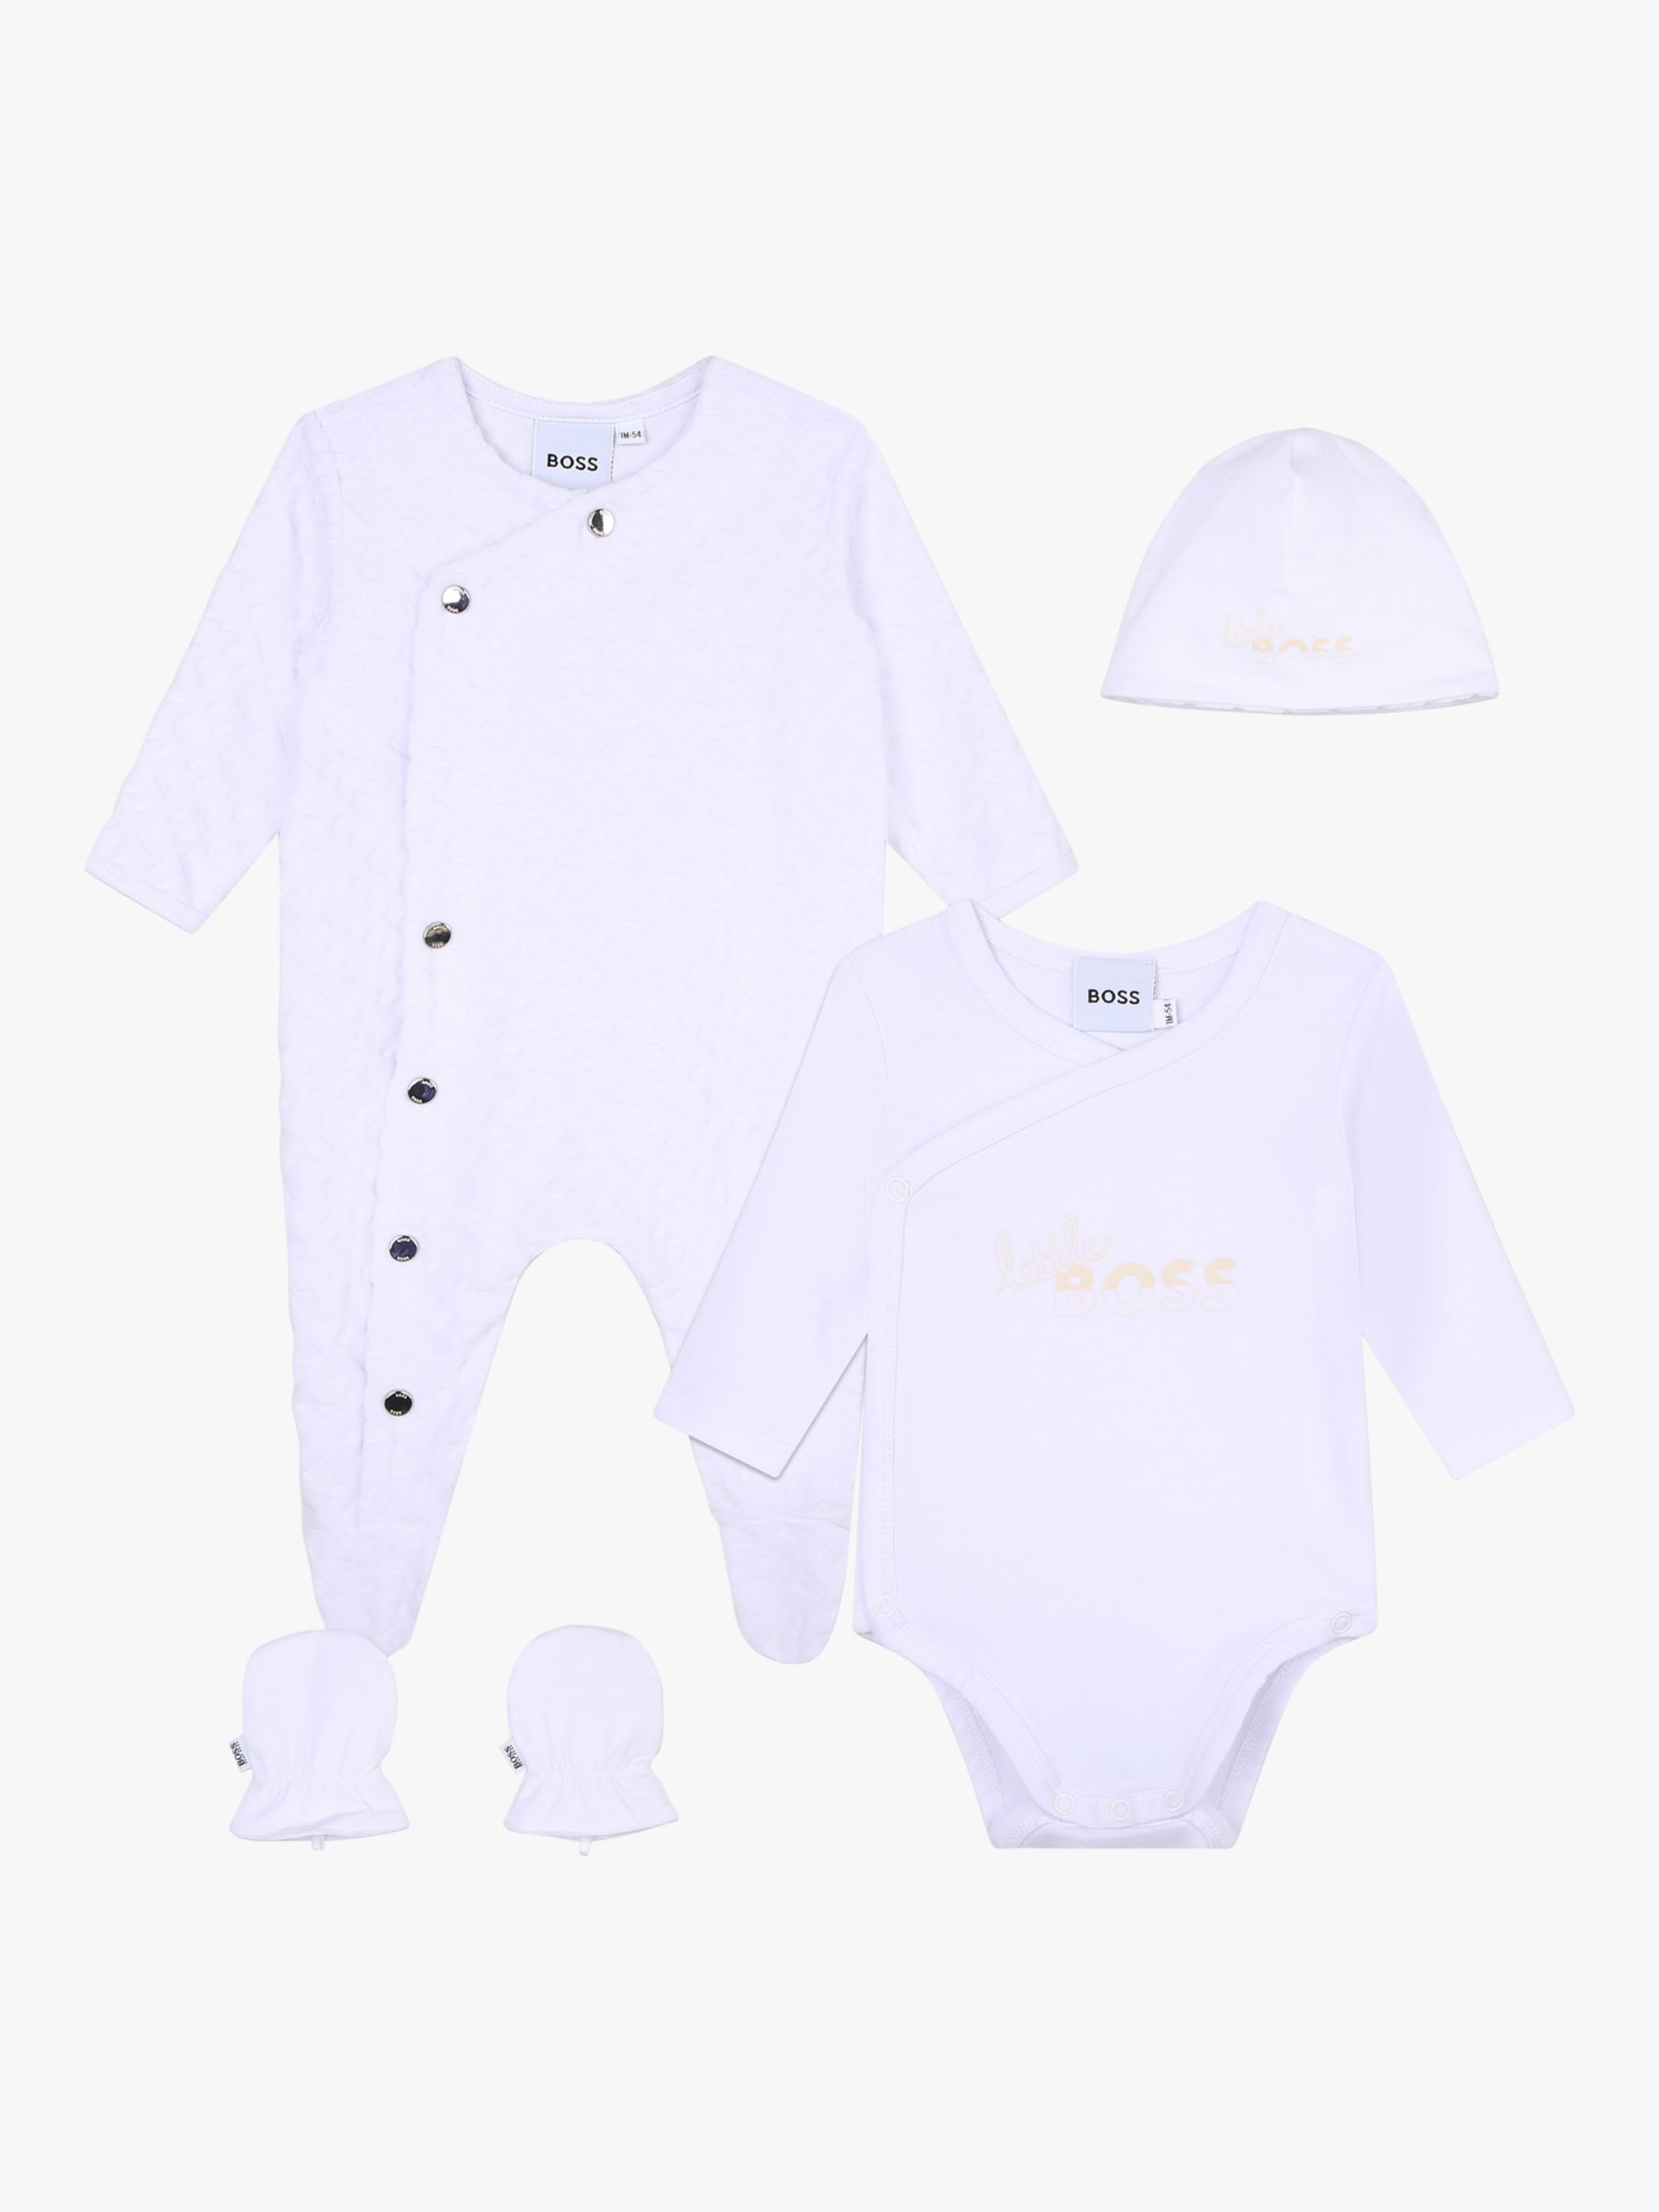 BOSS Baby Velvet Monogram Jacquard Sleepsuit, Bodysuit, Hat & Mitten Set, White, 6 months